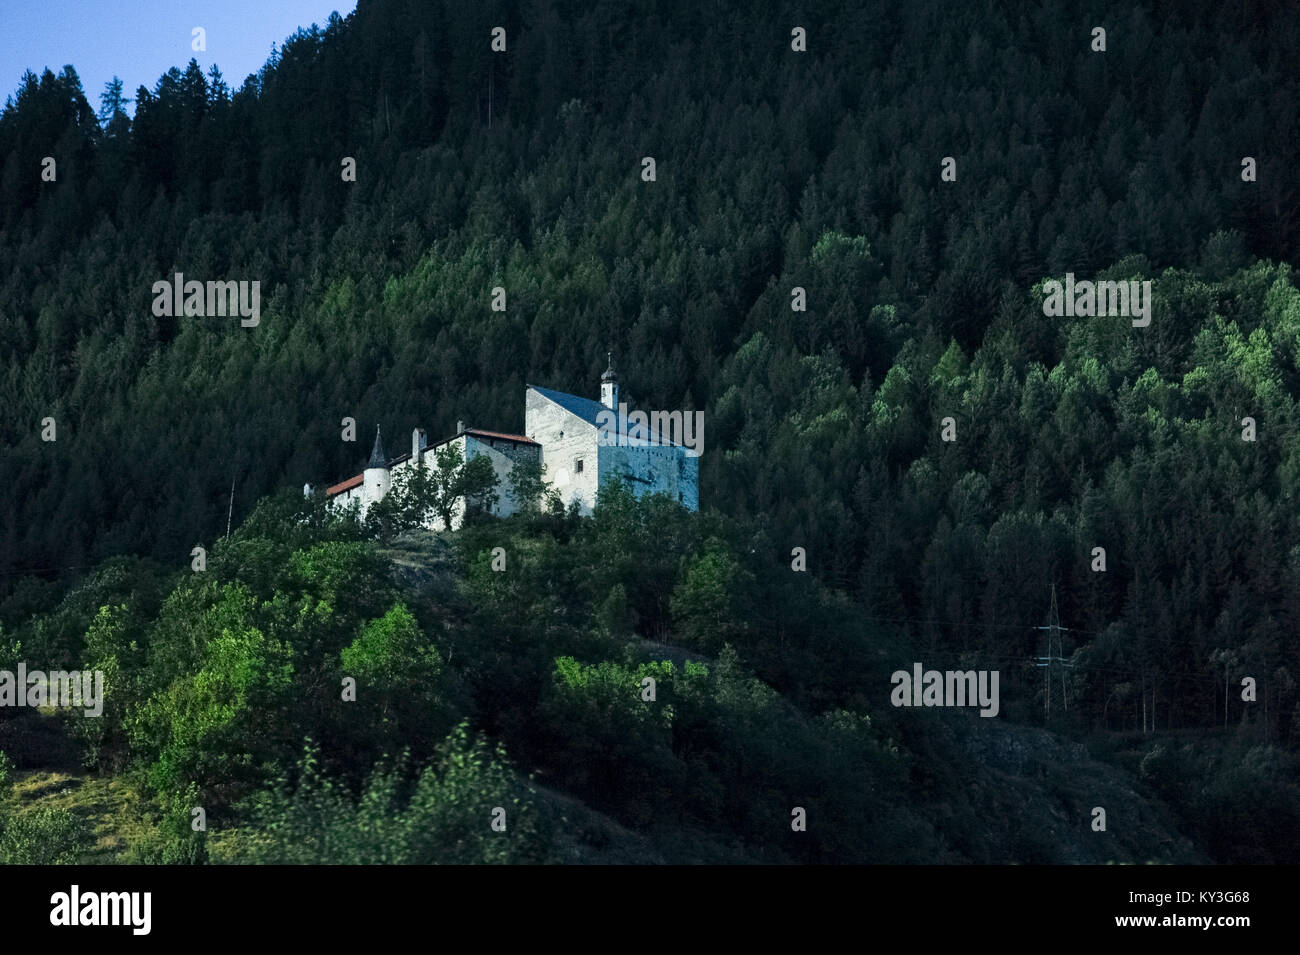 Castel Pietra (Schloss Sprechenstein) in Vipiteno/Sterzing,  Trentino-Alto Adige, Italy. 8 August 2016 © Wojciech Strozyk / Alamy Stock Photo Stock Photo